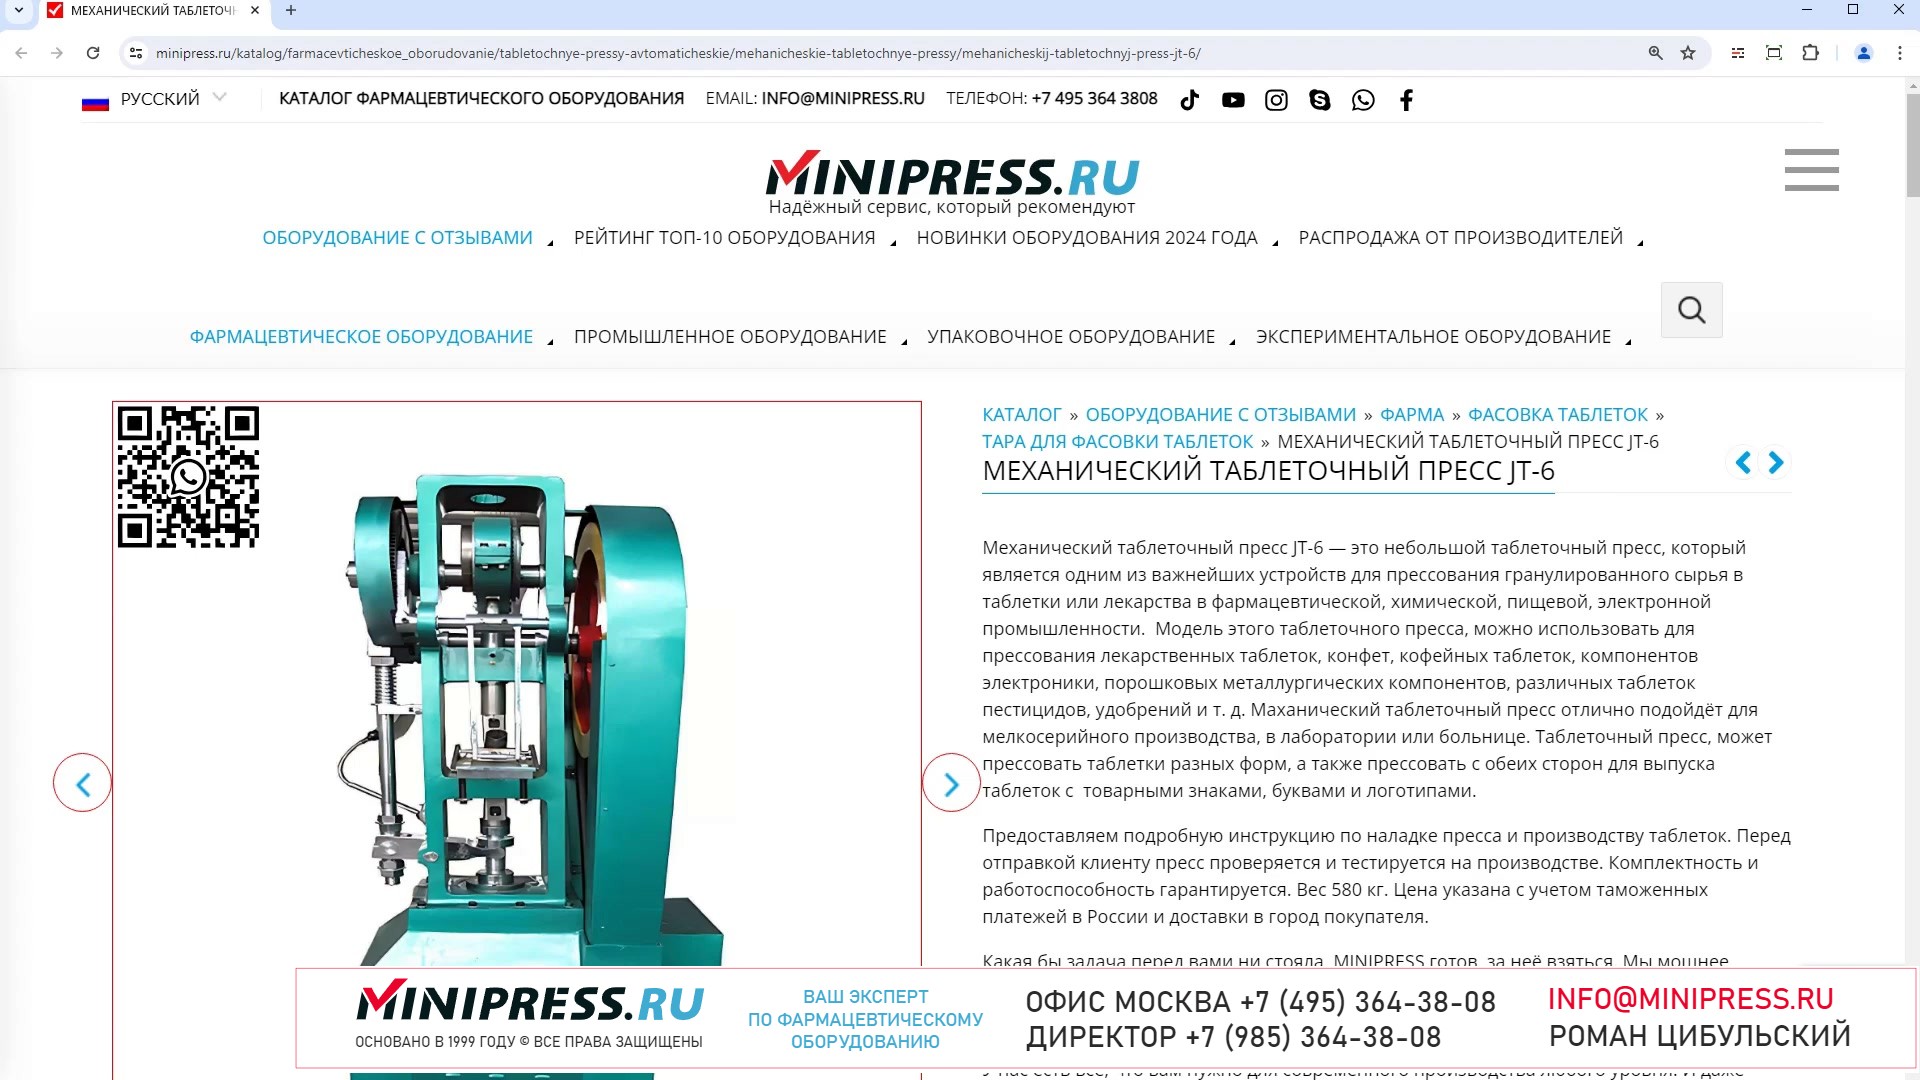 Minipress.ru Механический таблеточный пресс JT-6